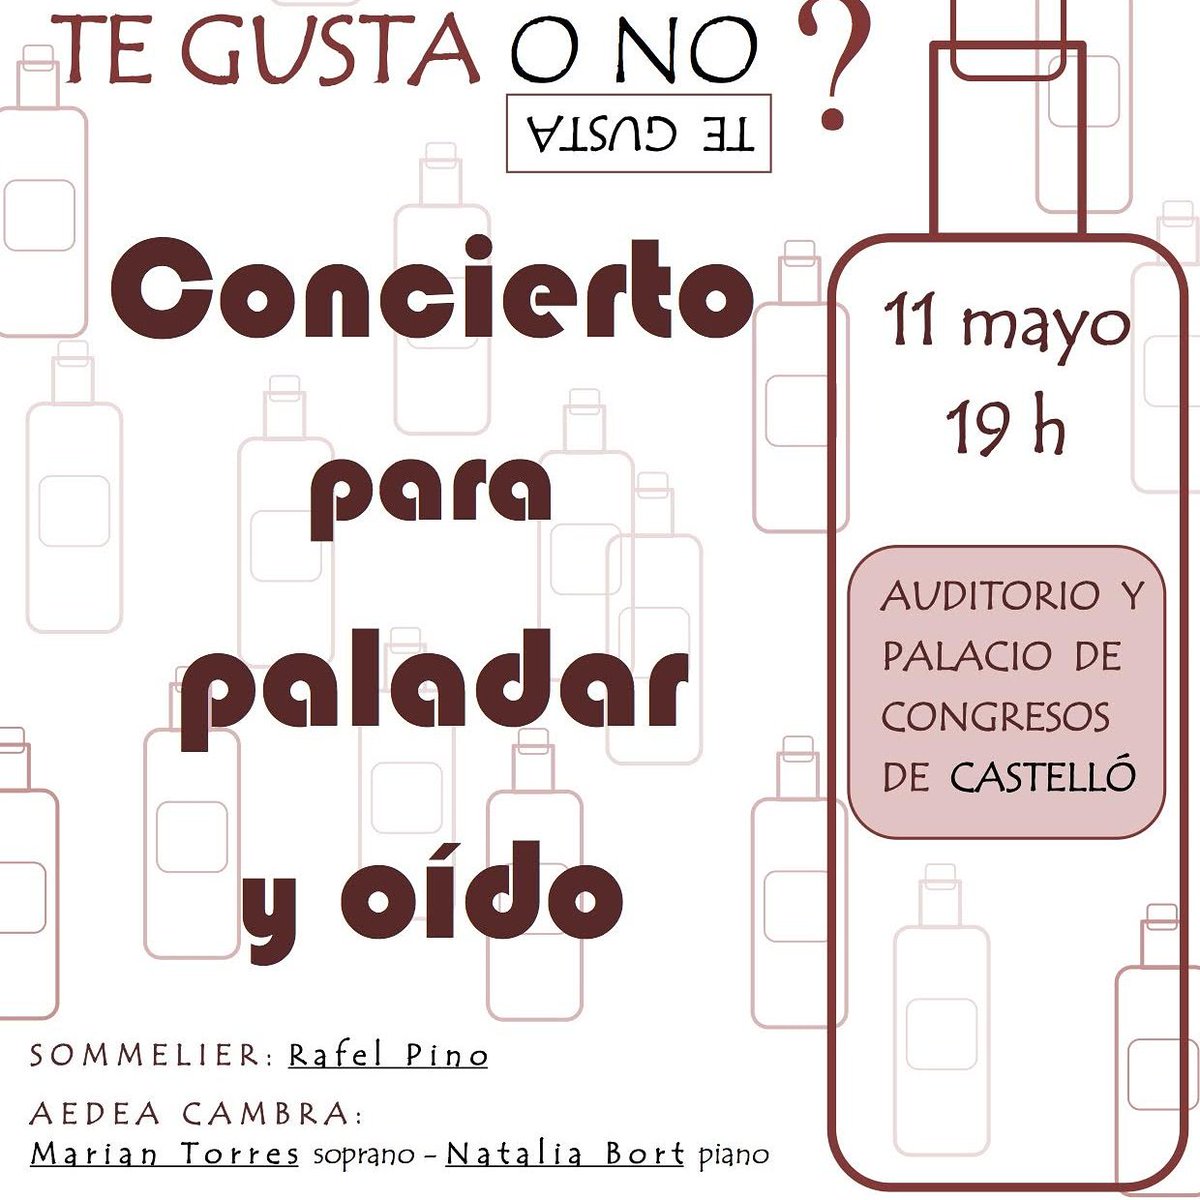 El próximo 11 de mayo a las 19h os esperamos con un concierto-cata muy especial. @cellermasroig @periodicomediterraneo @culturainquieta #winelovers #music #piano #soprano